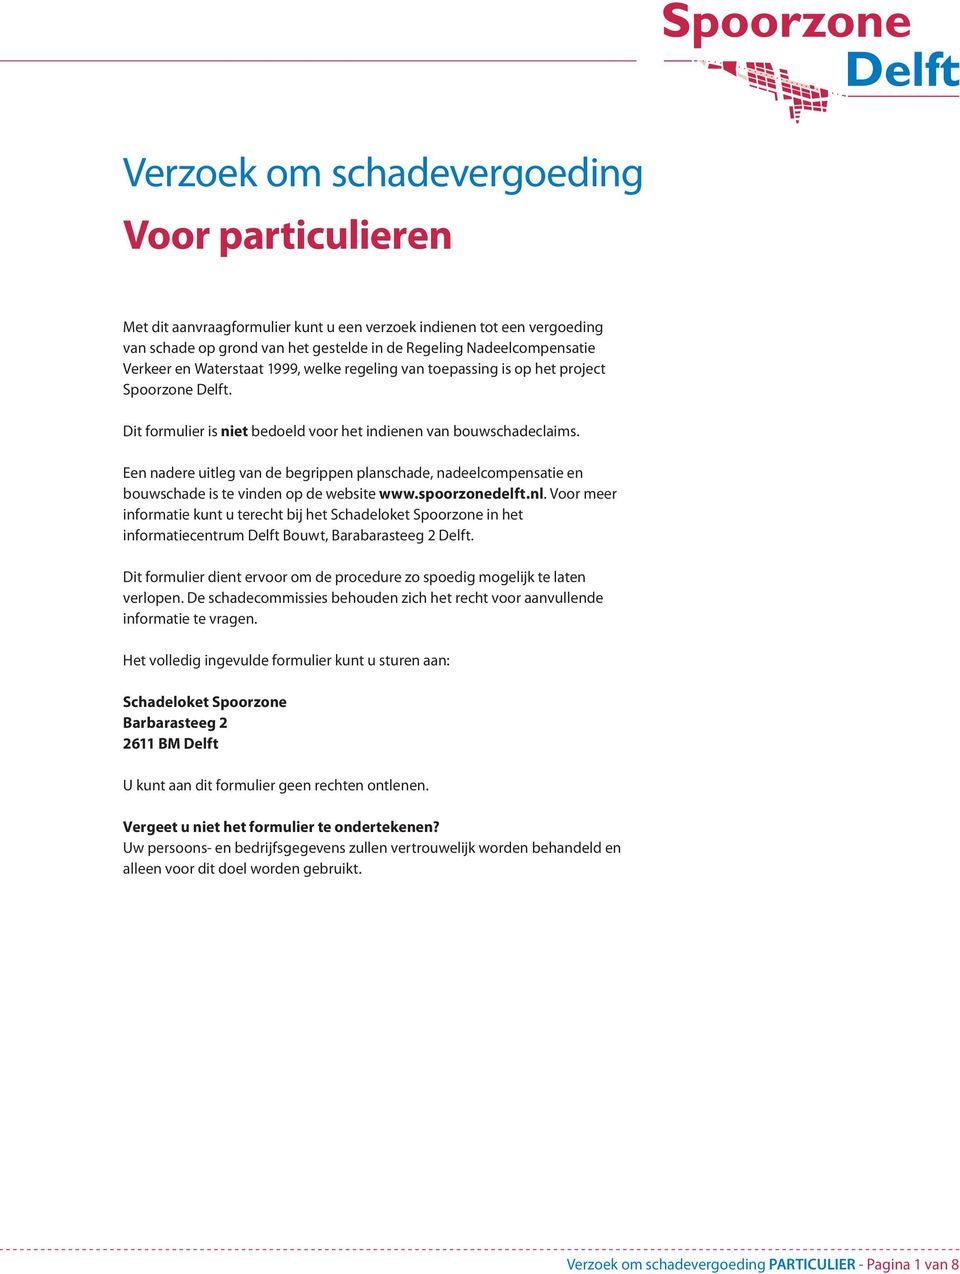 Een nadere uitleg van de begrippen planschade, nadeelcompensatie en bouwschade is te vinden op de website www.spoorzonedelft.nl.